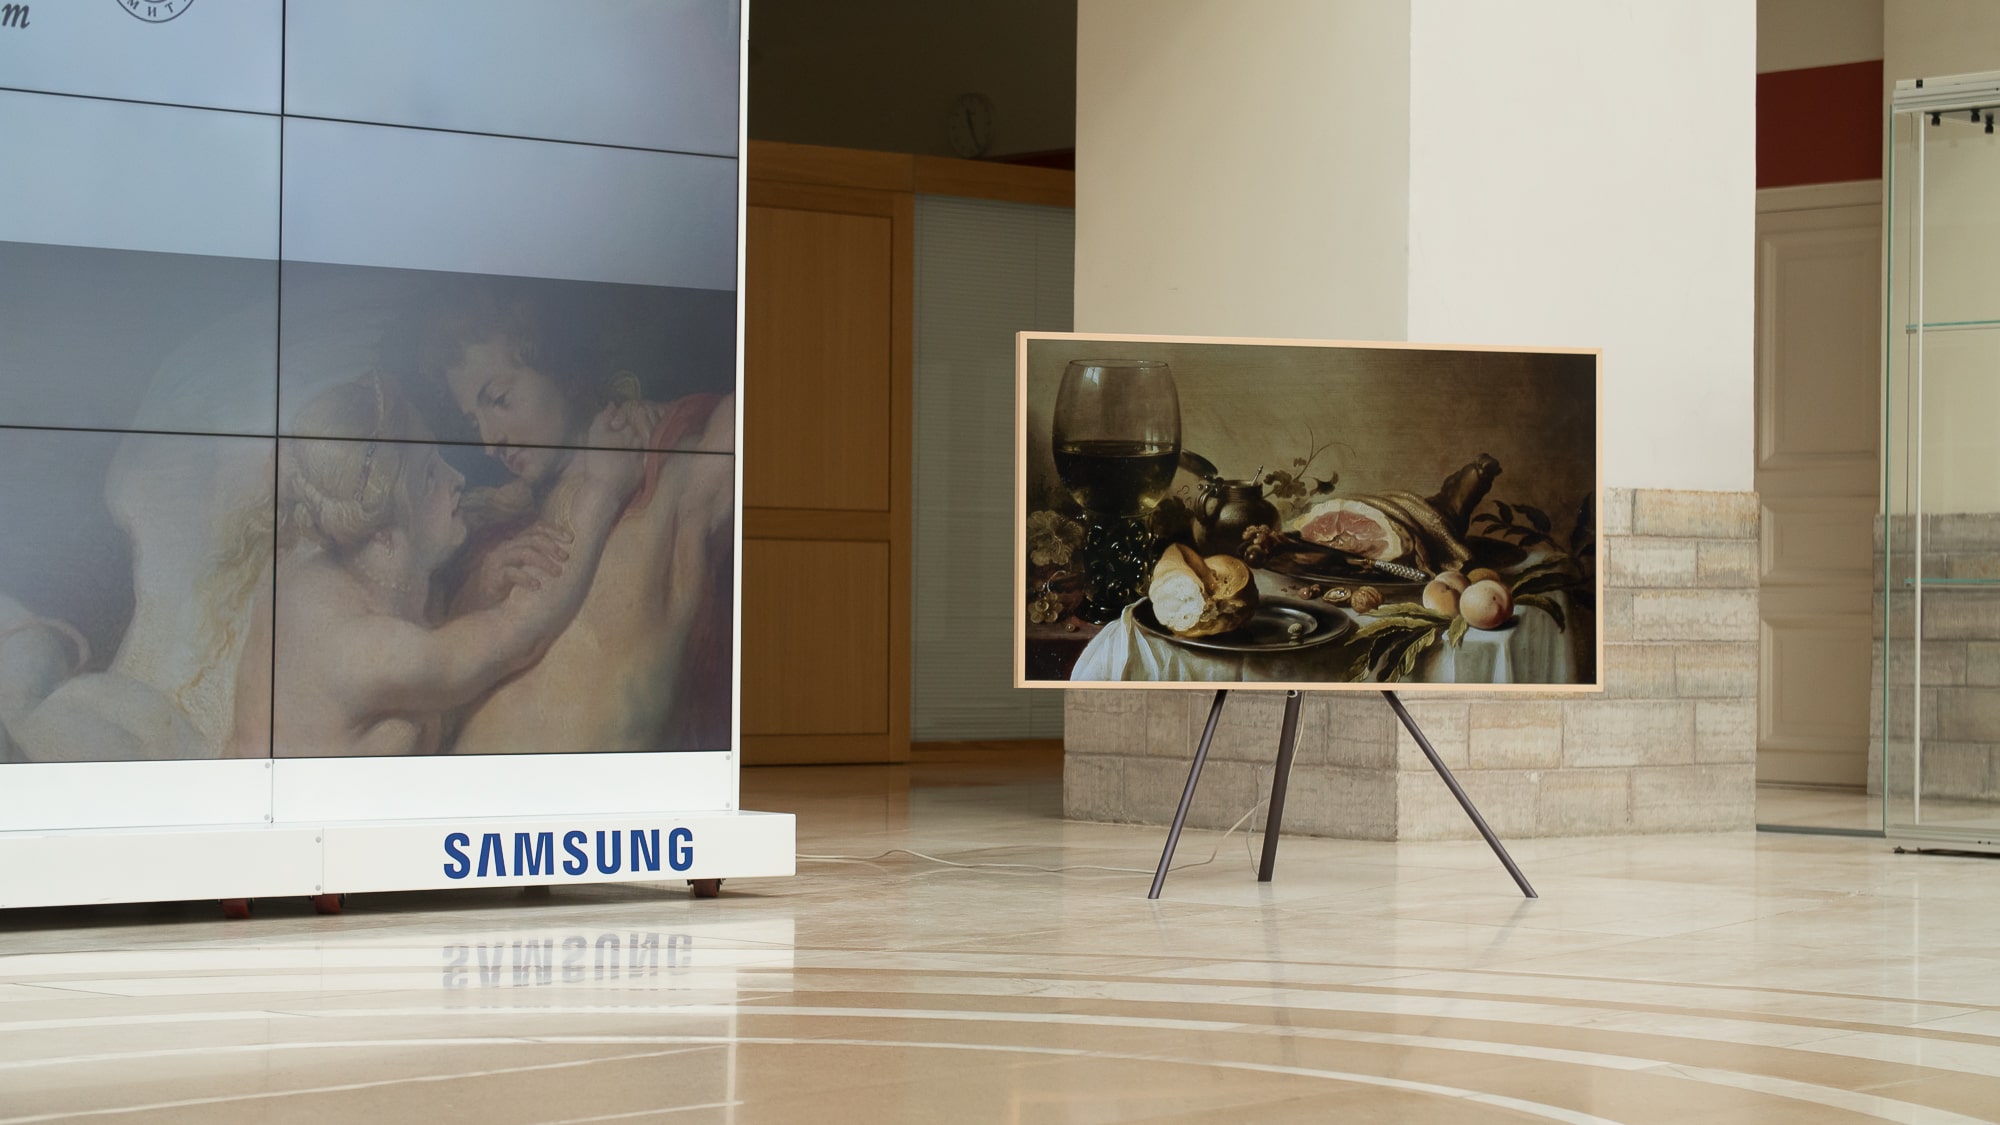 Durante el primer semestre del año, Samsung logró una participación del mercado mundial de televisores del 27% con un aumento de 2 puntos porcentuales